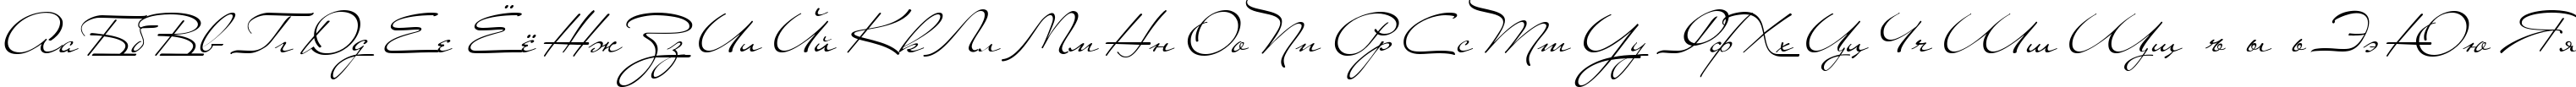 Пример написания русского алфавита шрифтом Carolina